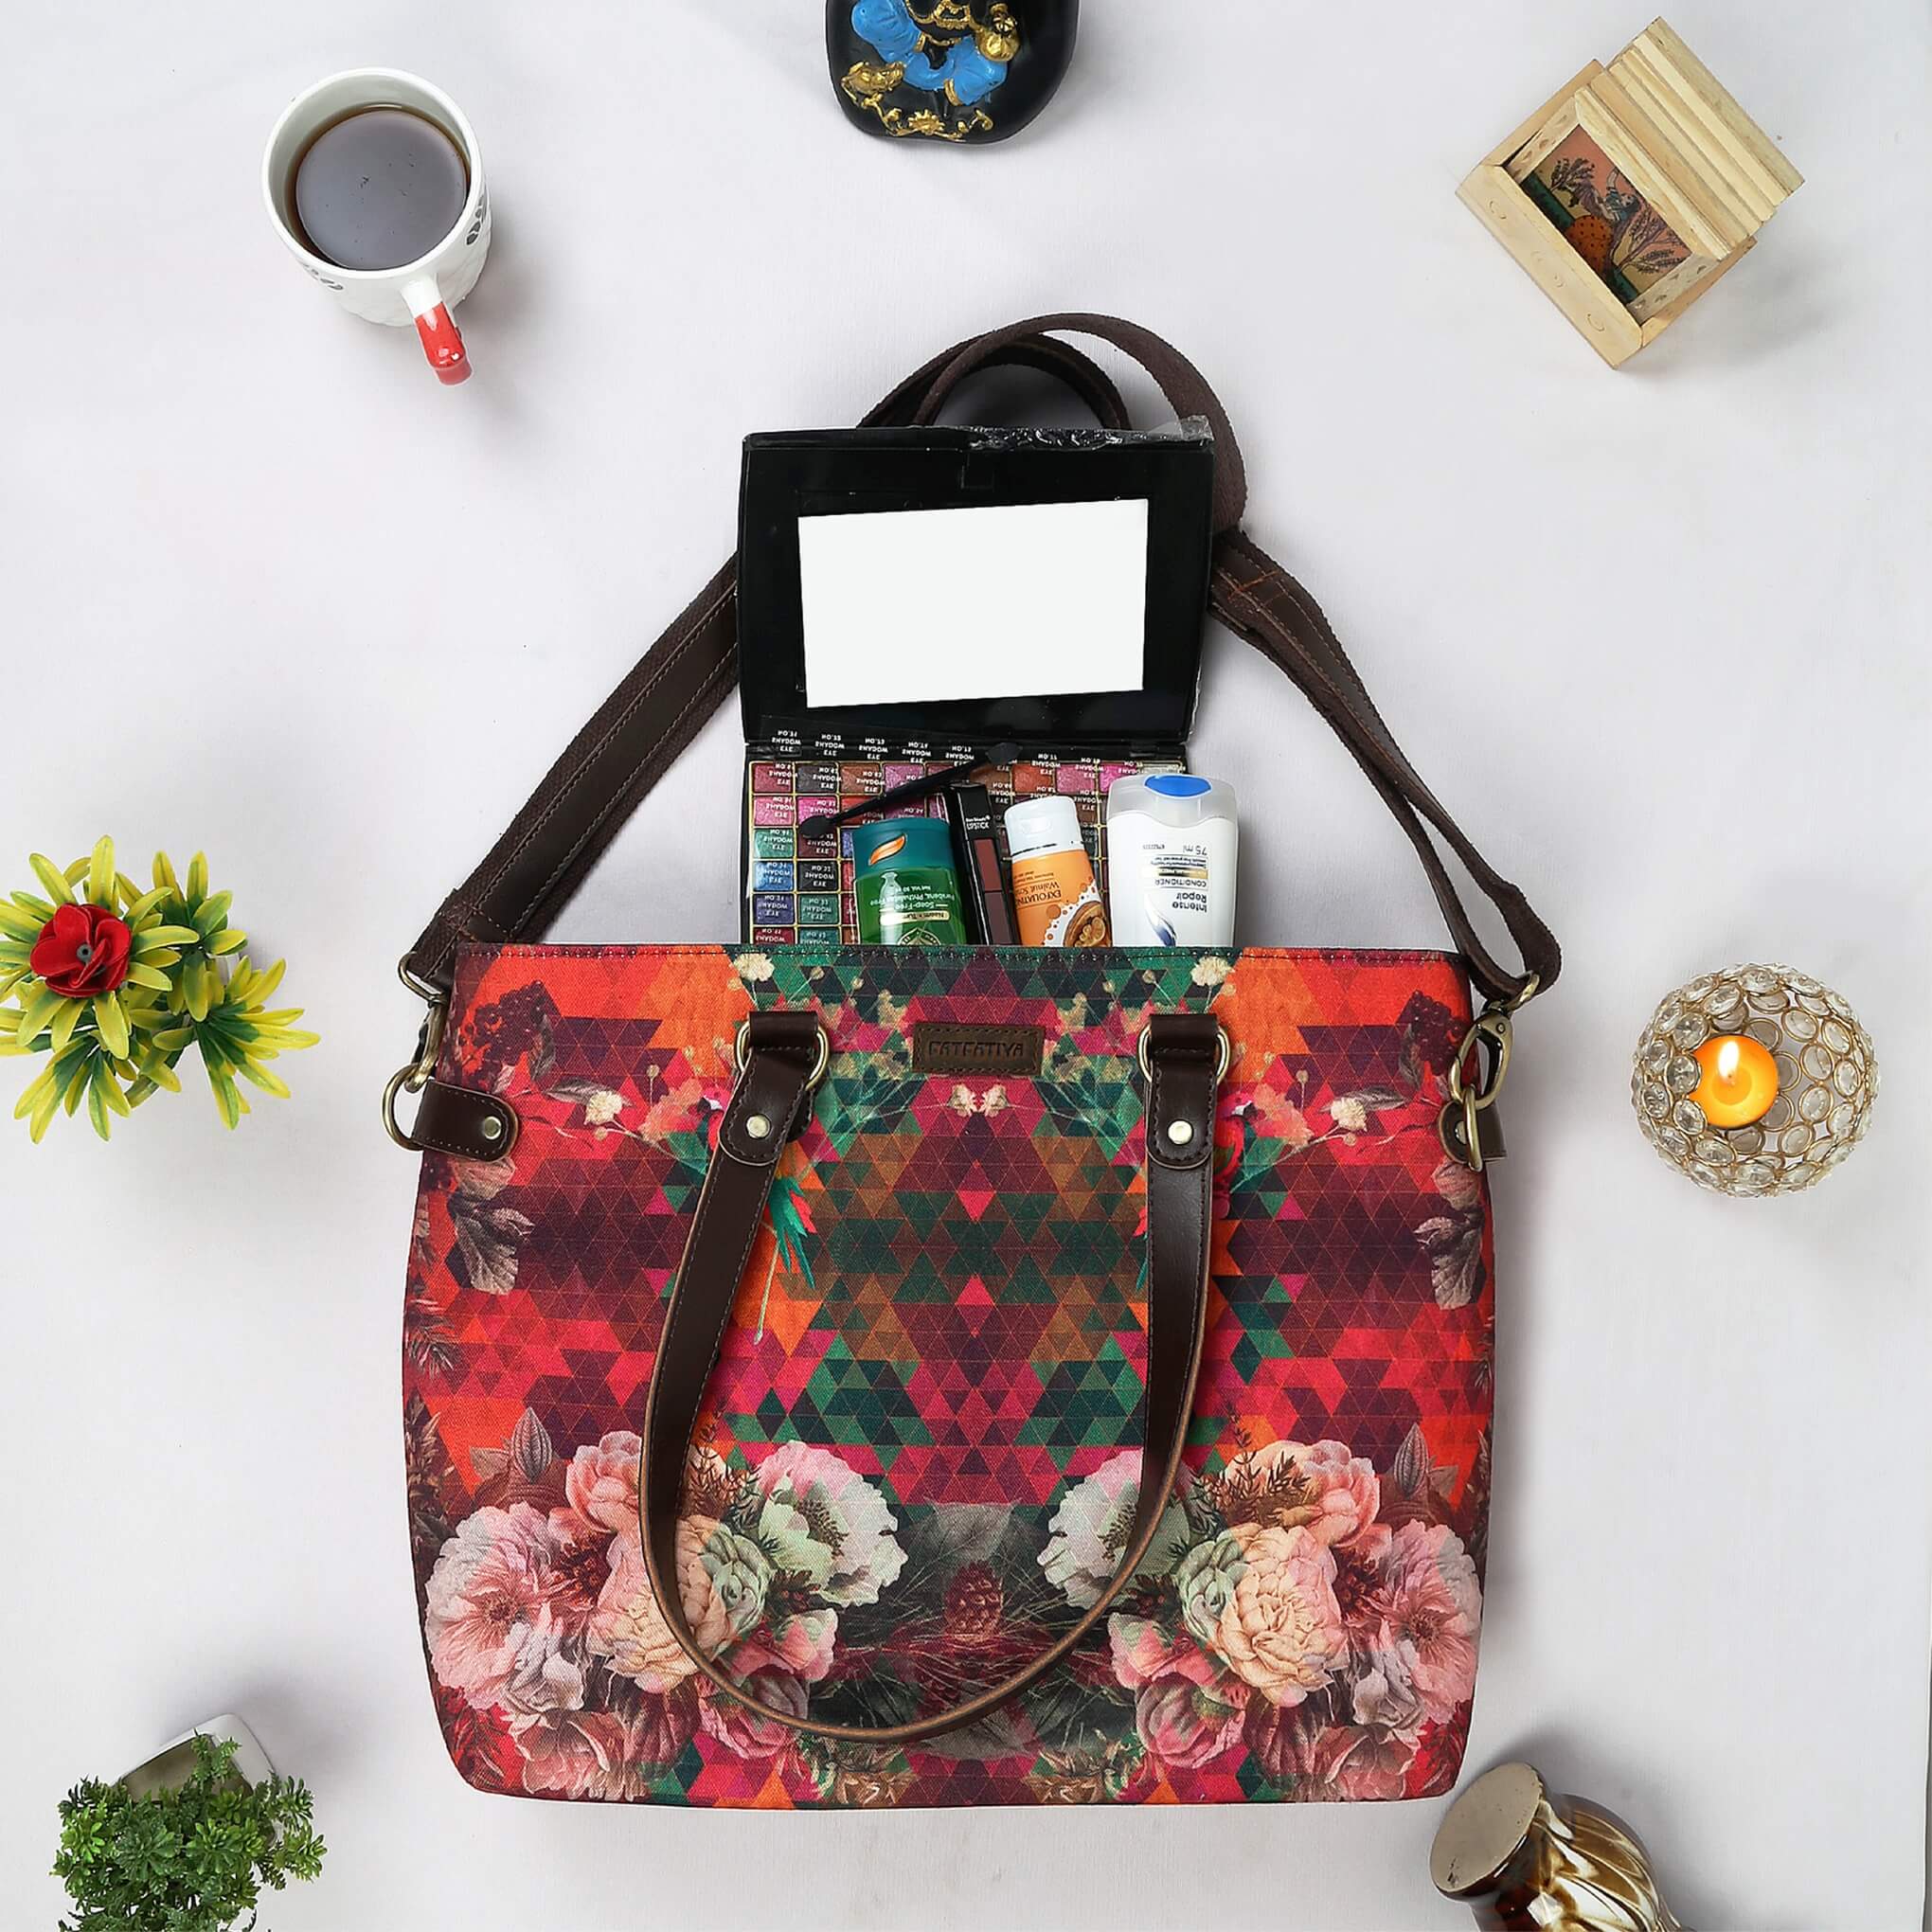 Women’s Multicolour Floral Tote Bag